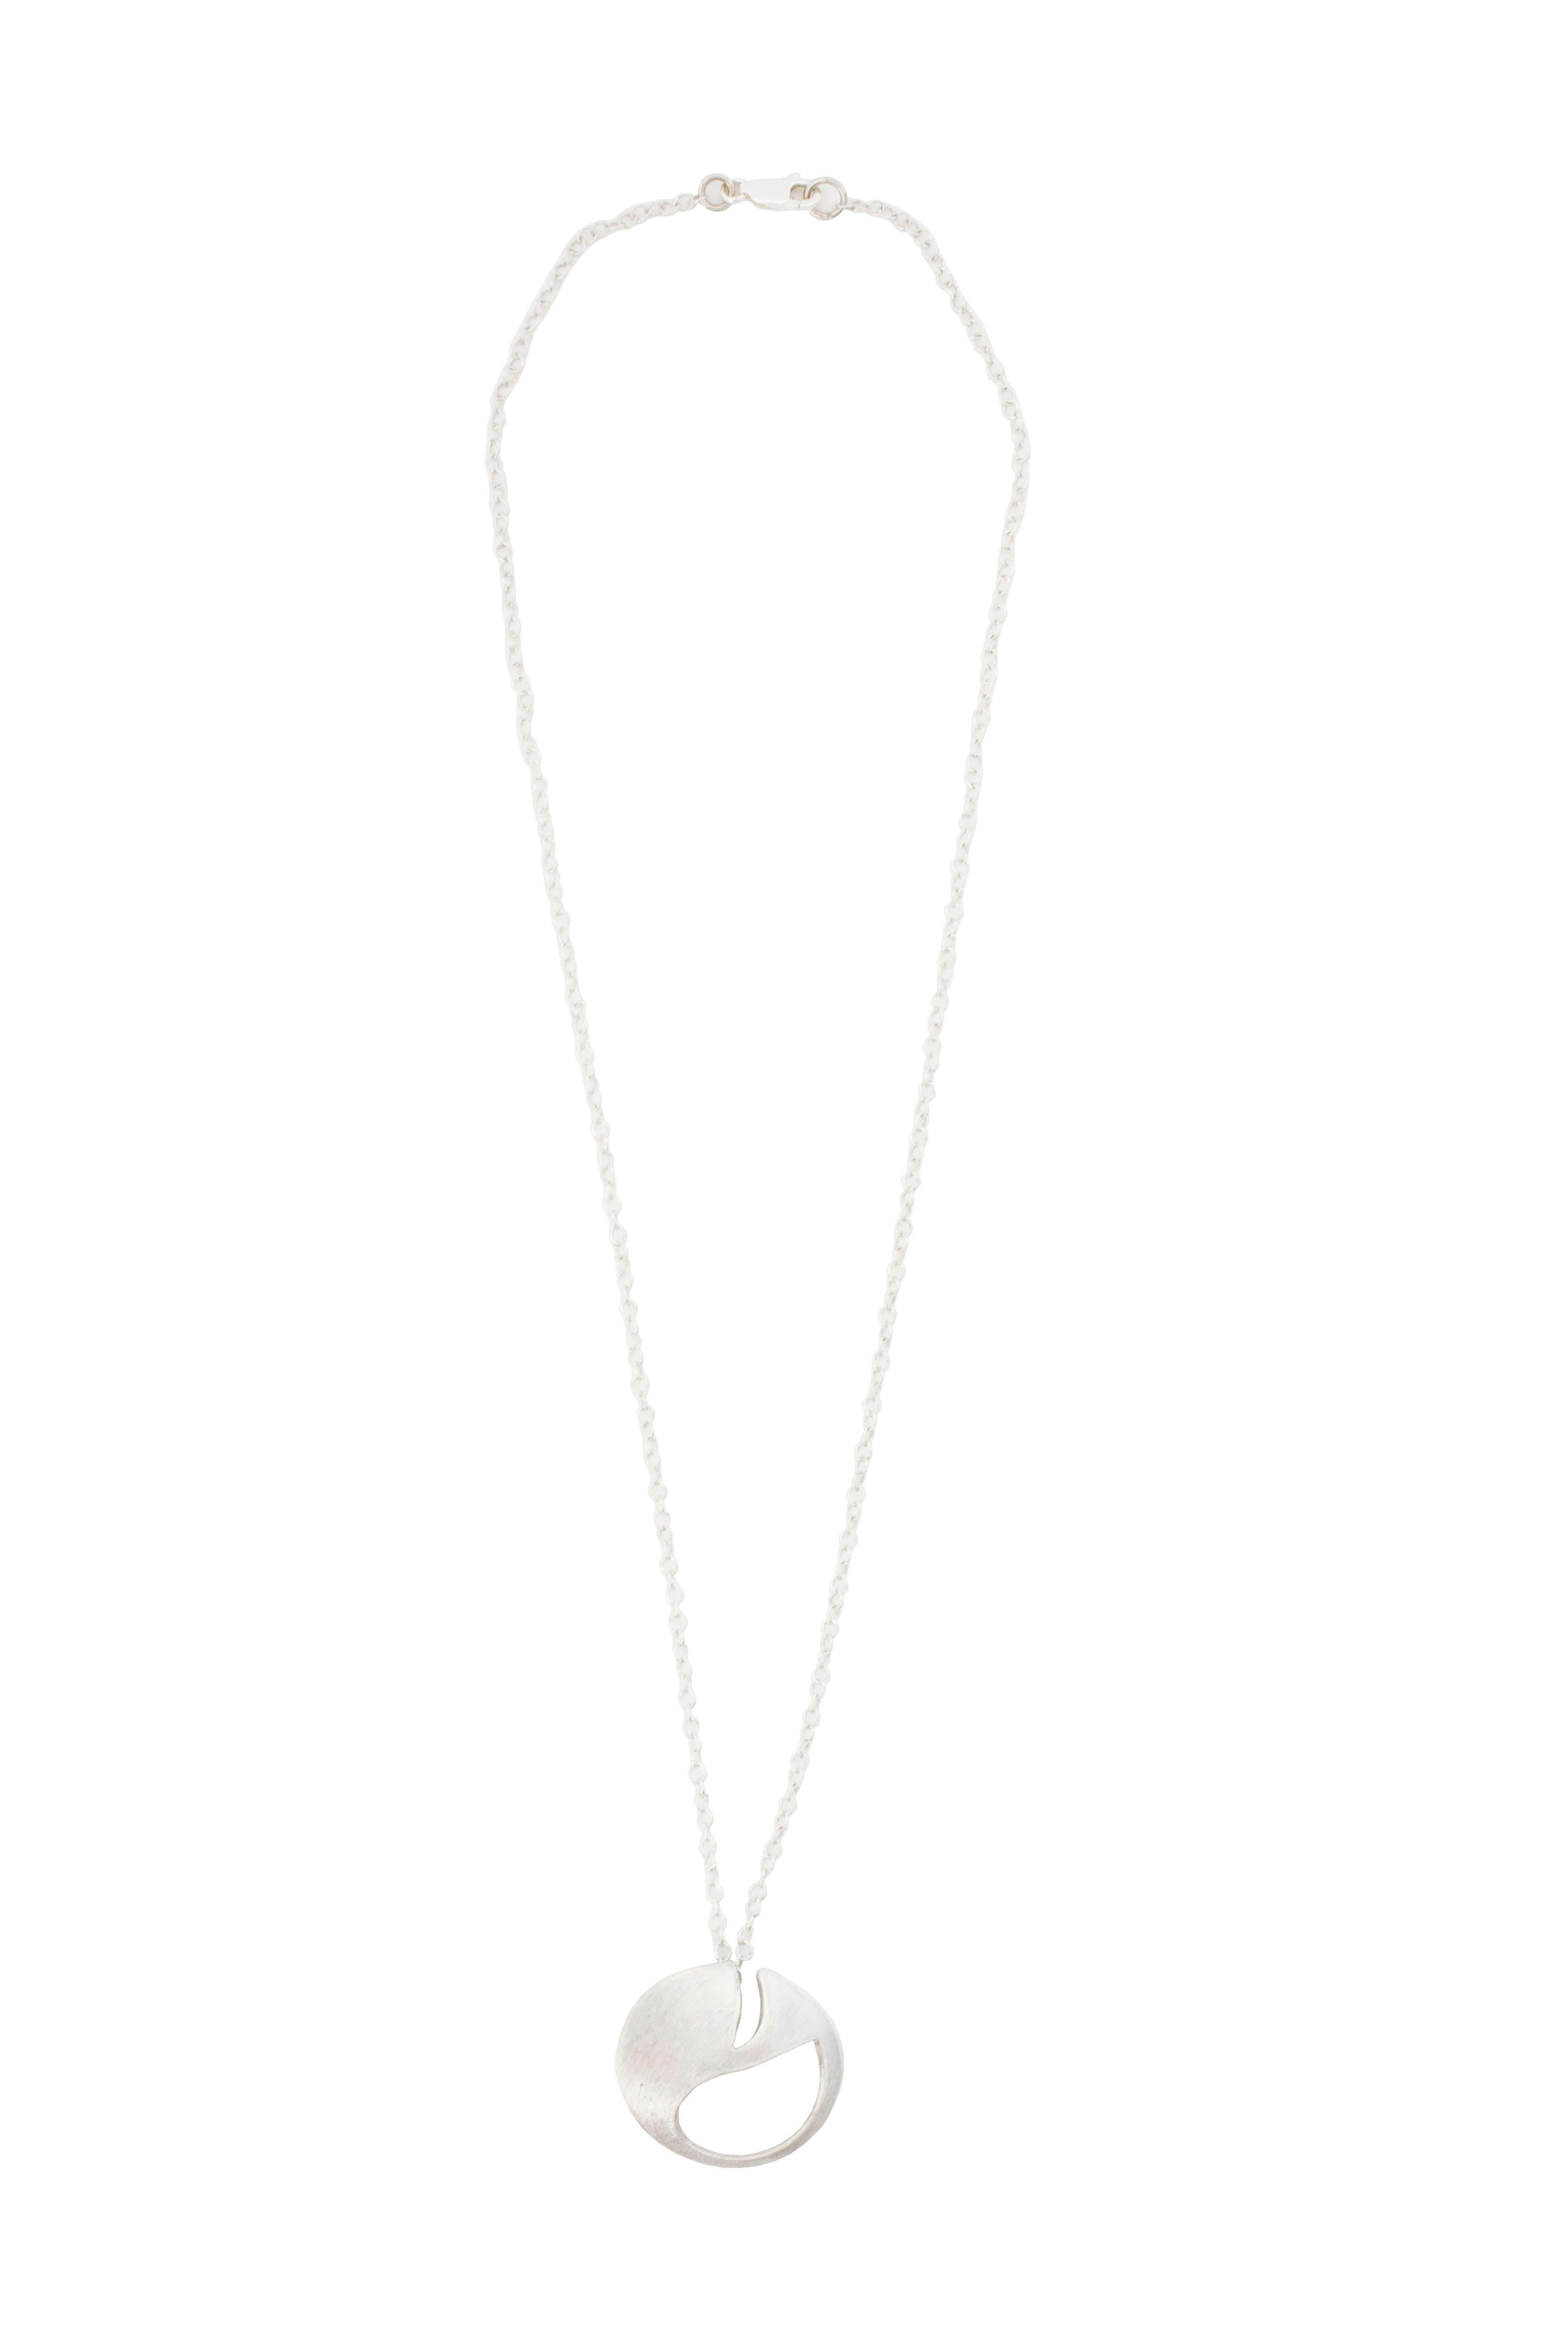 Geometrische, minimalistische Halskette aus Sterlingsilber aus unserer Post-Punk-Kollektion.

Durchmesser 3cm
Kettenlänge 48cm

Die Form stammt von einer verformten Interpretation eines Sicherheitsnadelkopfes.

